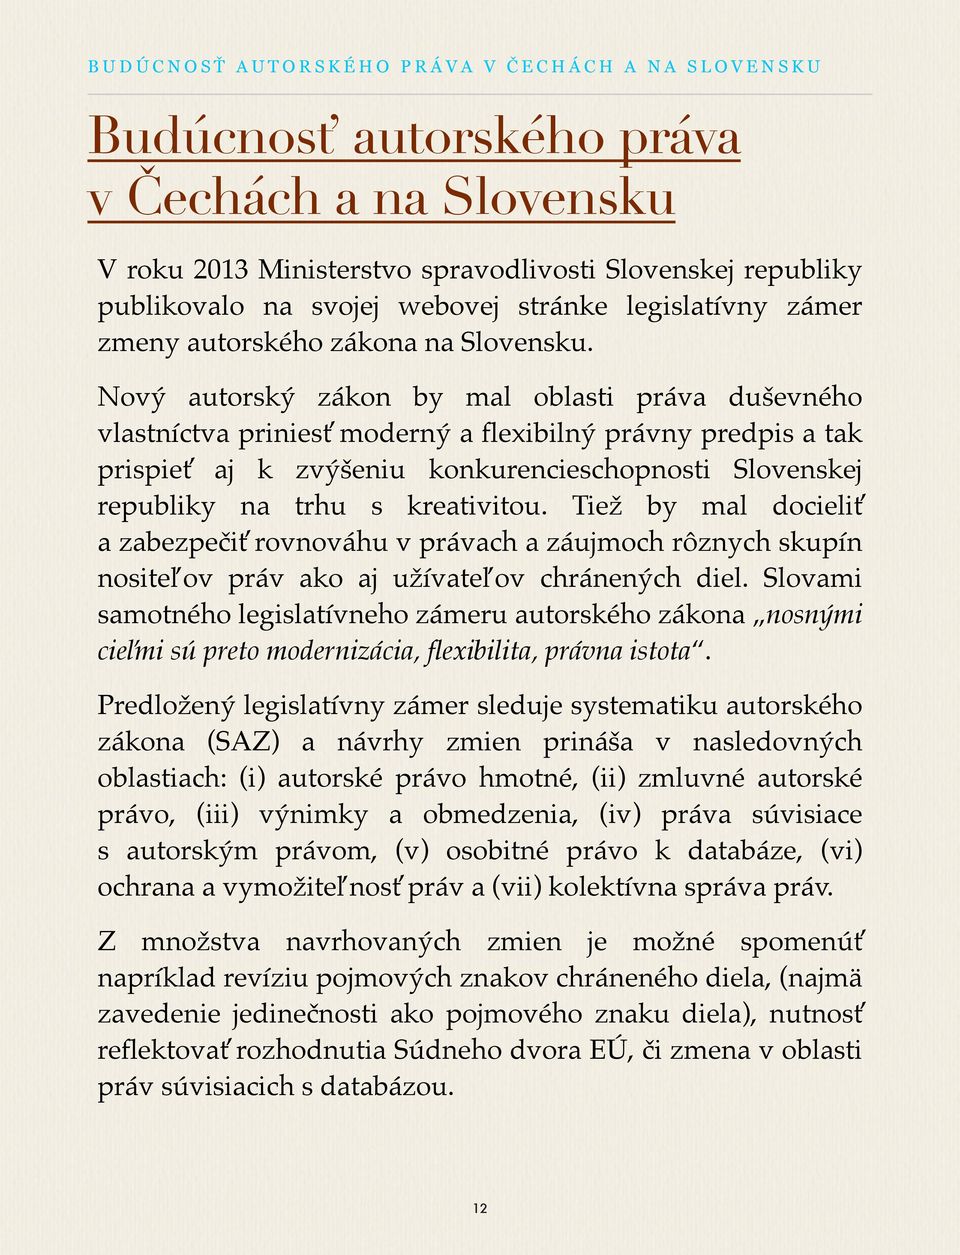 Nový autorský zákon by mal oblasti práva duševného vlastníctva priniesť moderný a flexibilný právny predpis a tak prispieť aj k zvýšeniu konkurencieschopnosti Slovenskej republiky na trhu s